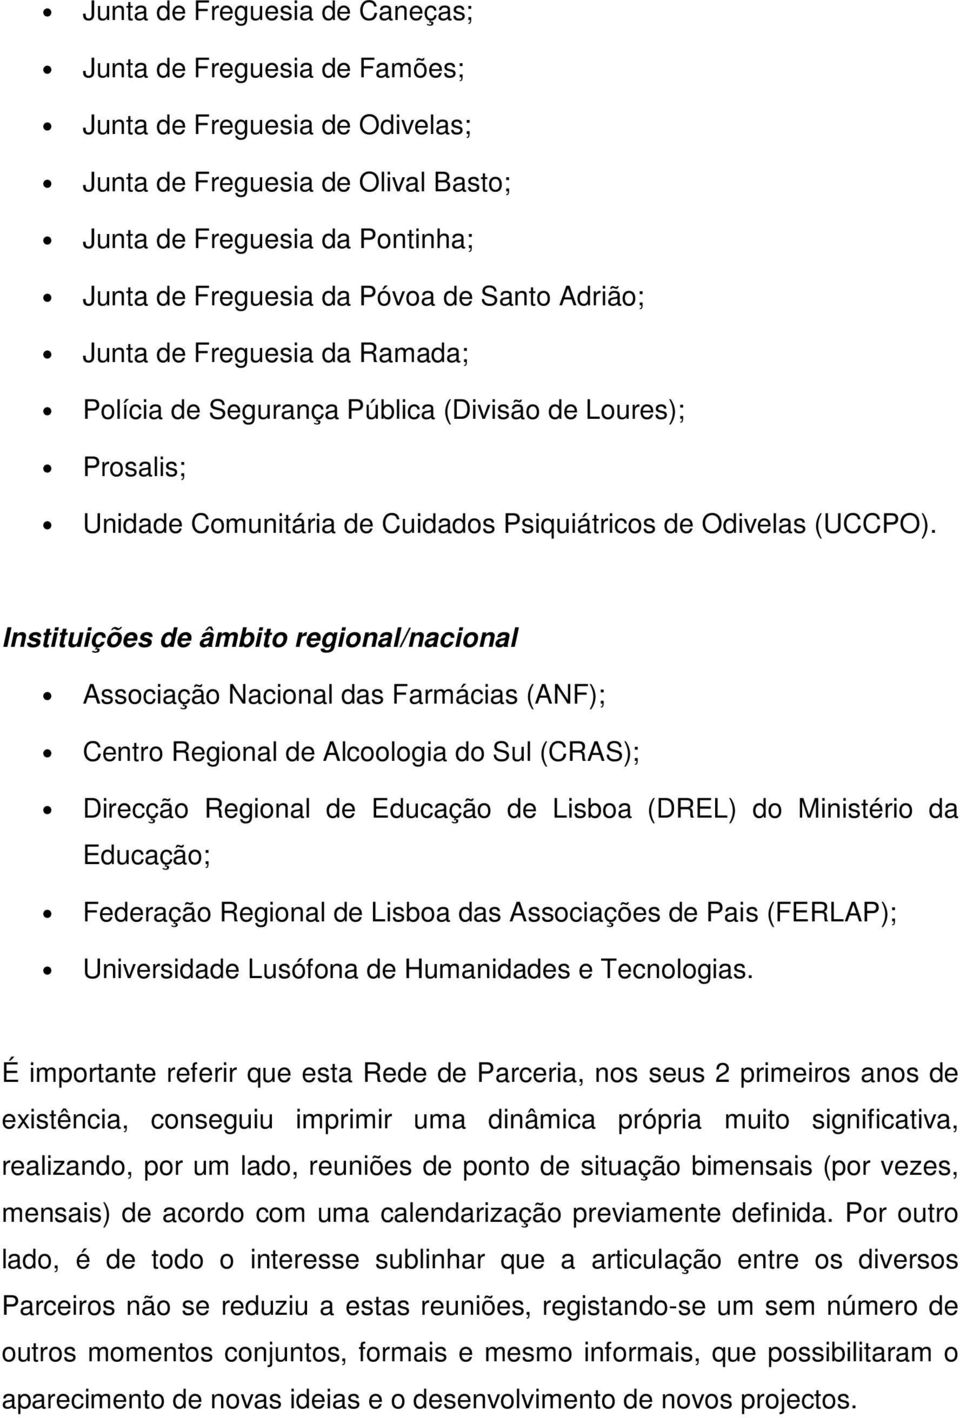 Instituições de âmbito regional/nacional Associação Nacional das Farmácias (ANF); Centro Regional de Alcoologia do Sul (CRAS); Direcção Regional de Educação de Lisboa (DREL) do Ministério da